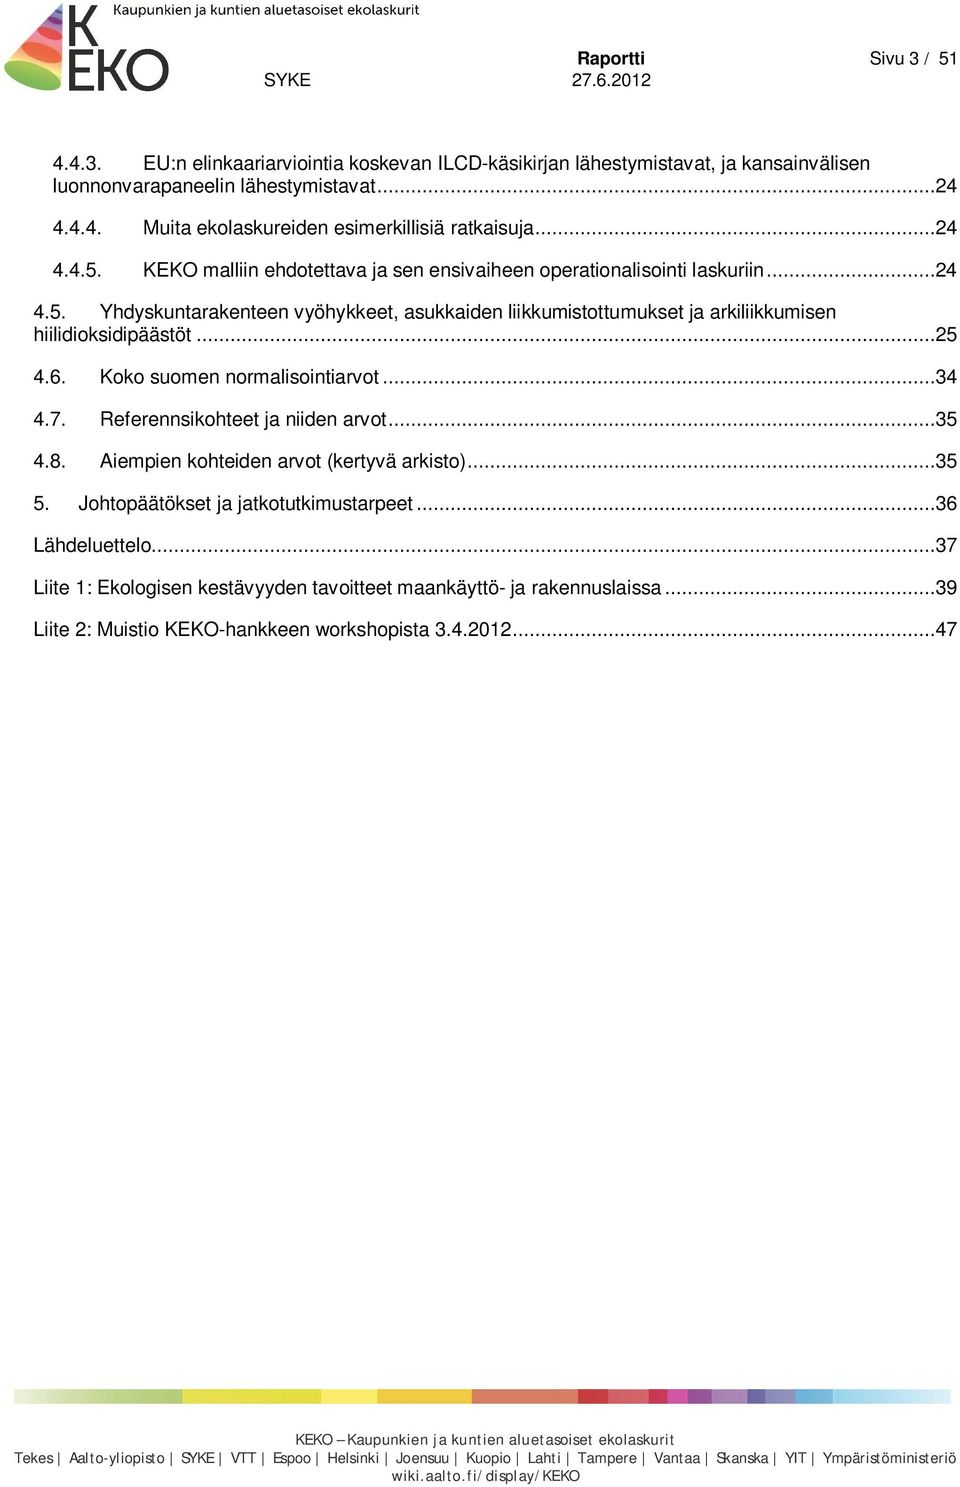 ..25 4.6. Koko suomen normalisointiarvot...34 4.7. Referennsikohteet ja niiden arvot...35 4.8. Aiempien kohteiden arvot (kertyvä arkisto)...35 5. Johtopäätökset ja jatkotutkimustarpeet.